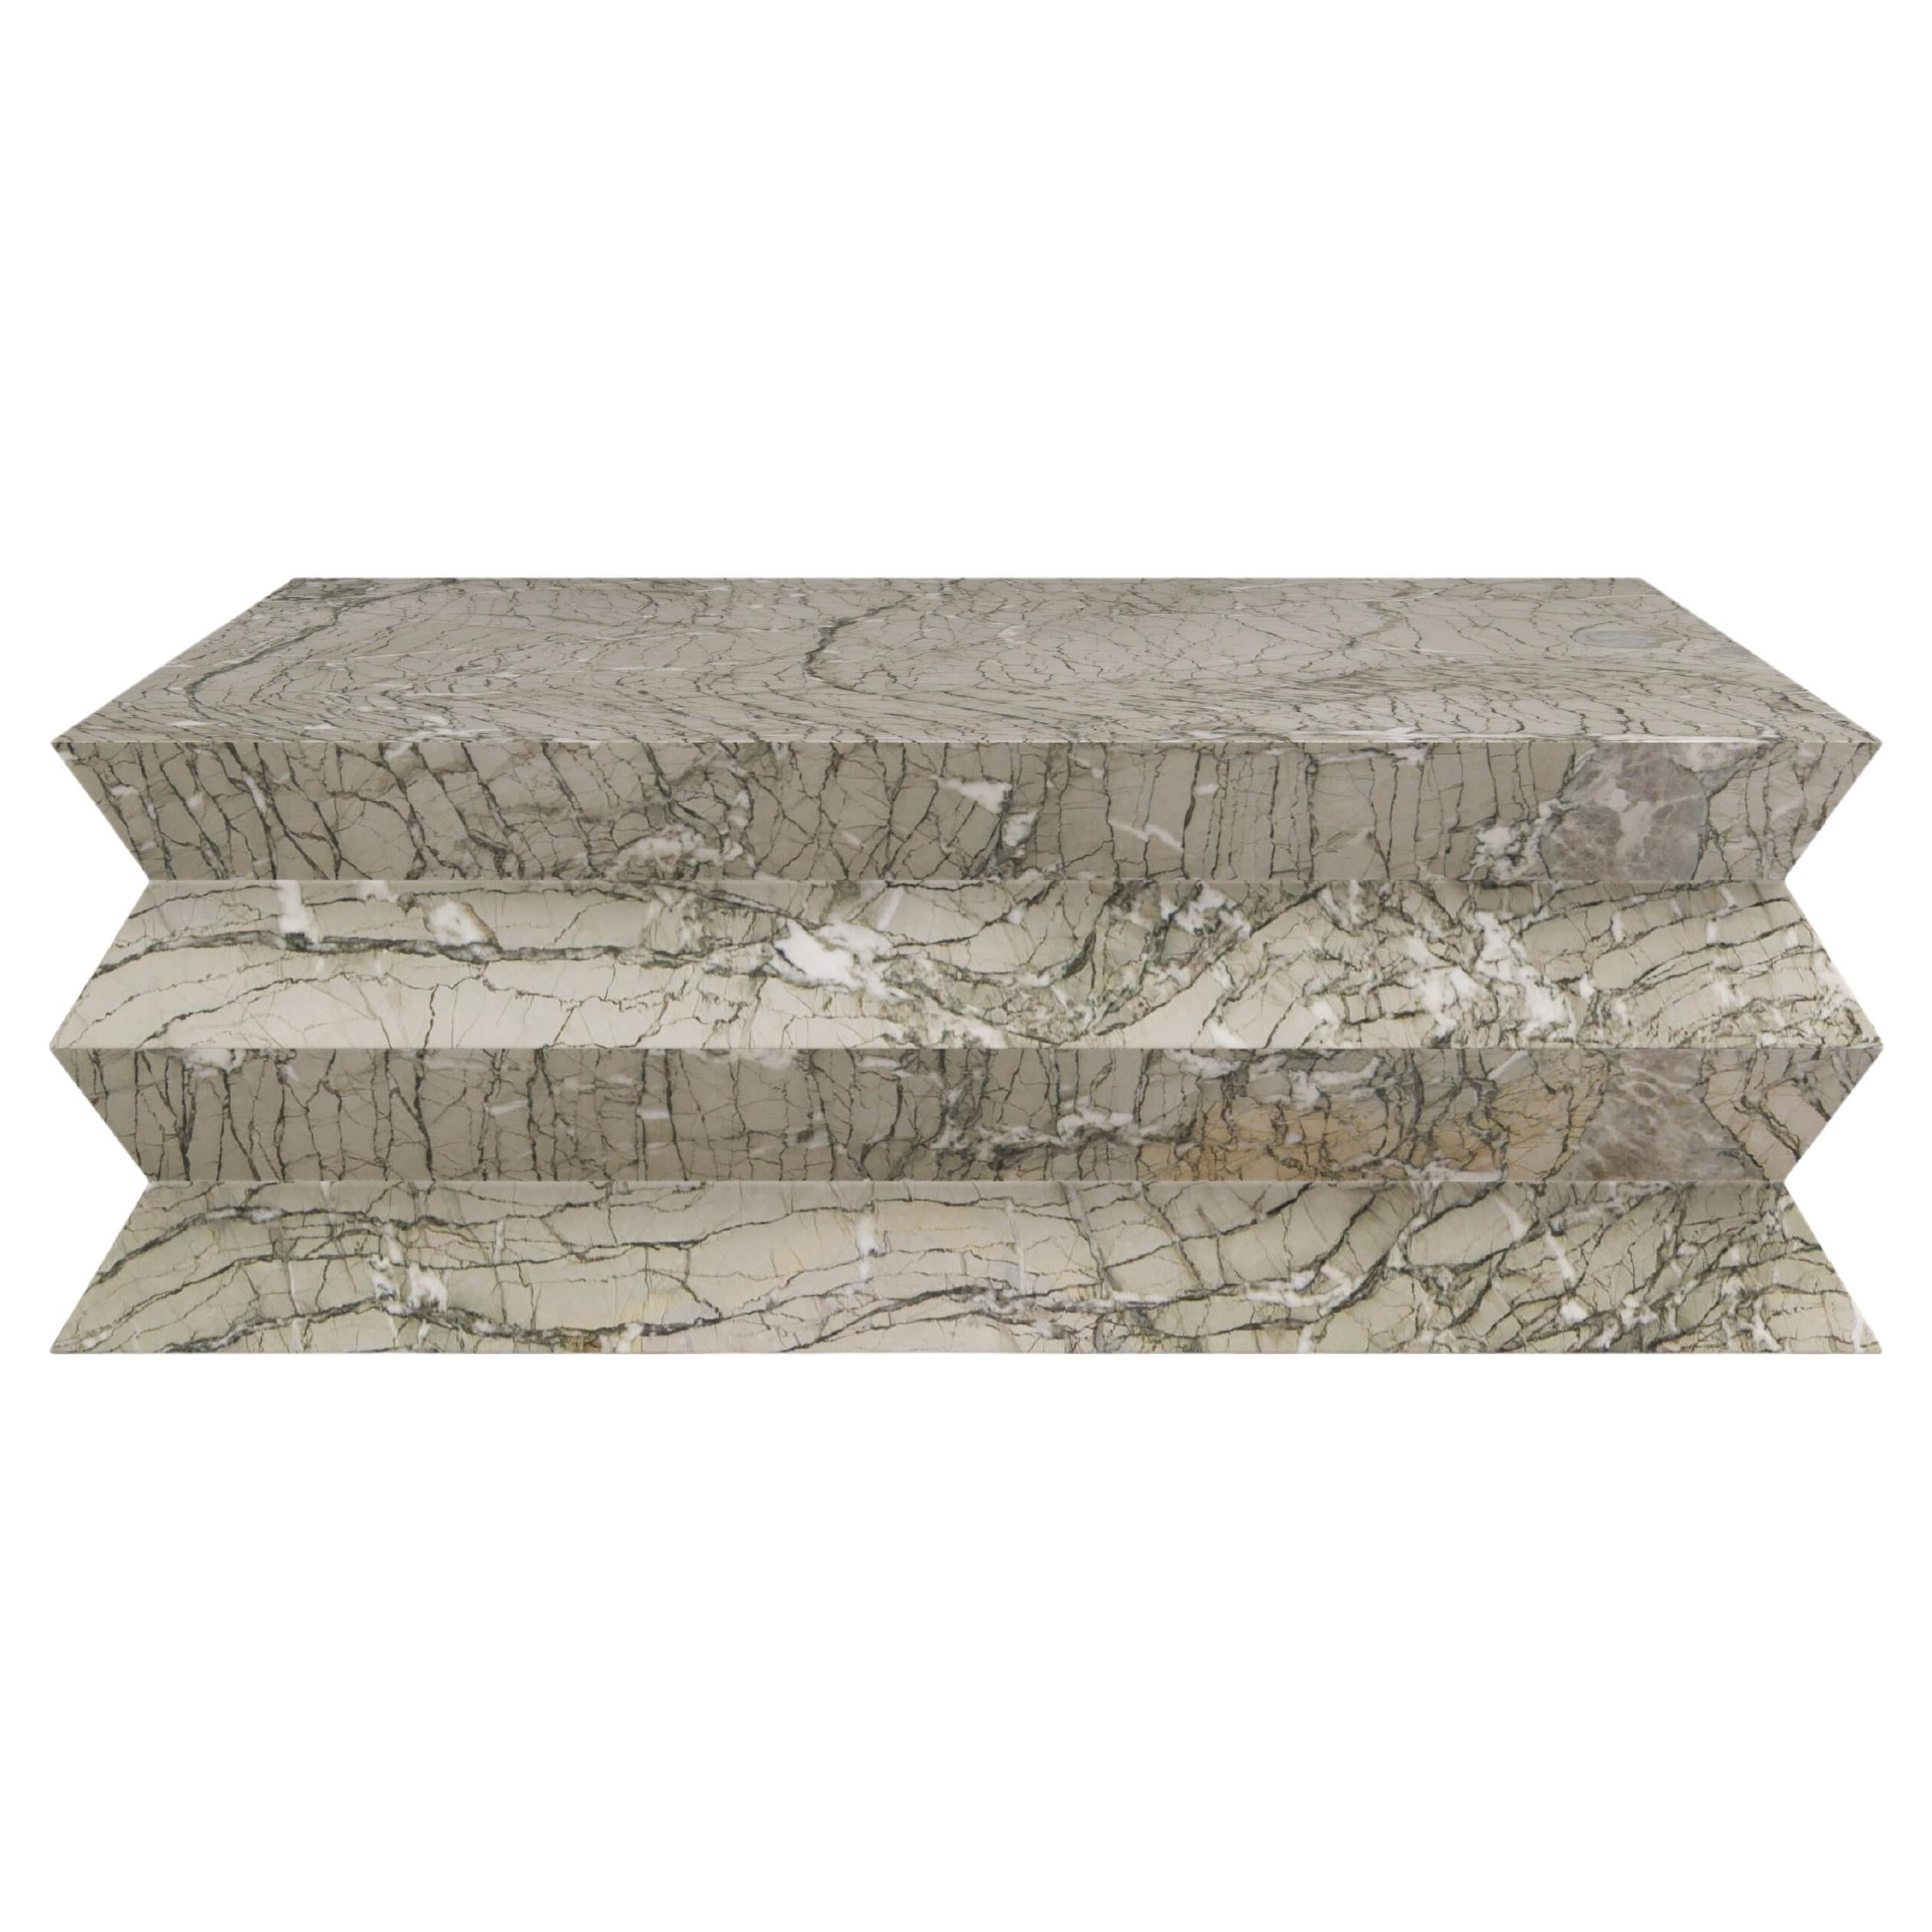 FORM(LA) table basse carrée Grinza 42 po. (L) x 42 po. (L) x 16 po. (H) marbre Antigua Verde Antigua en vente